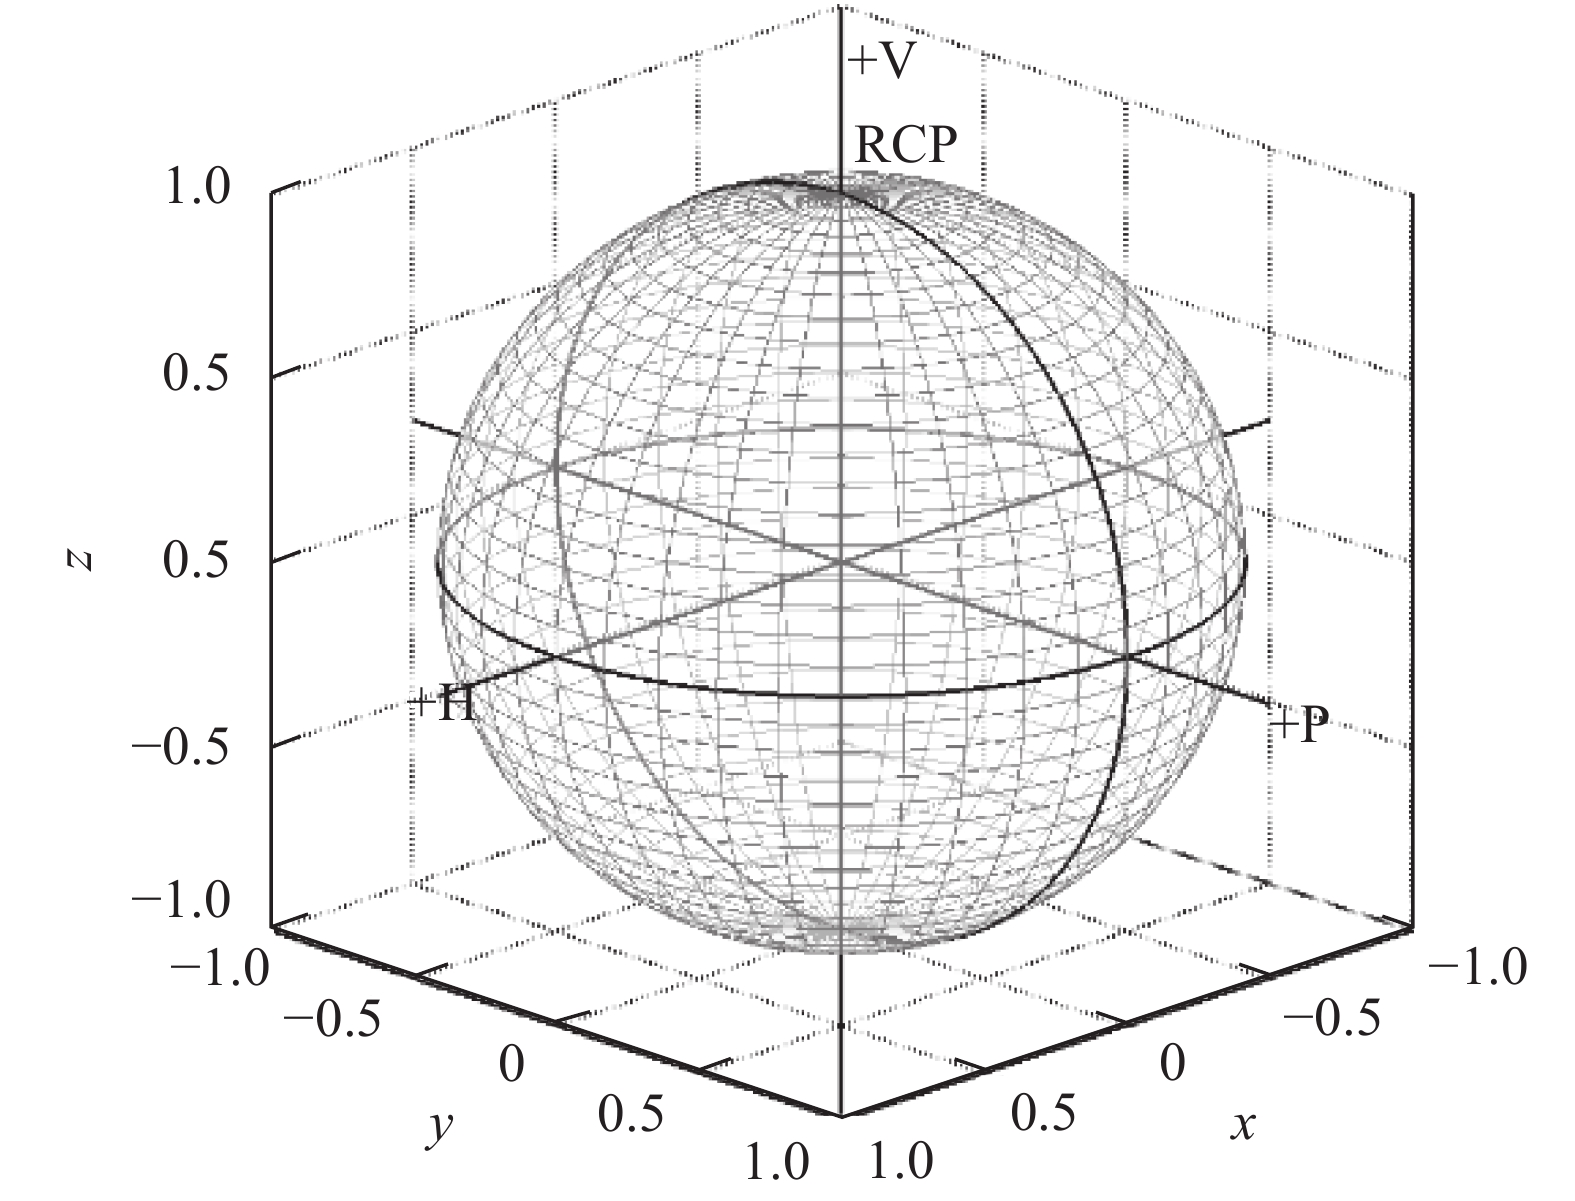 Description of polarization states using Poincare sphere